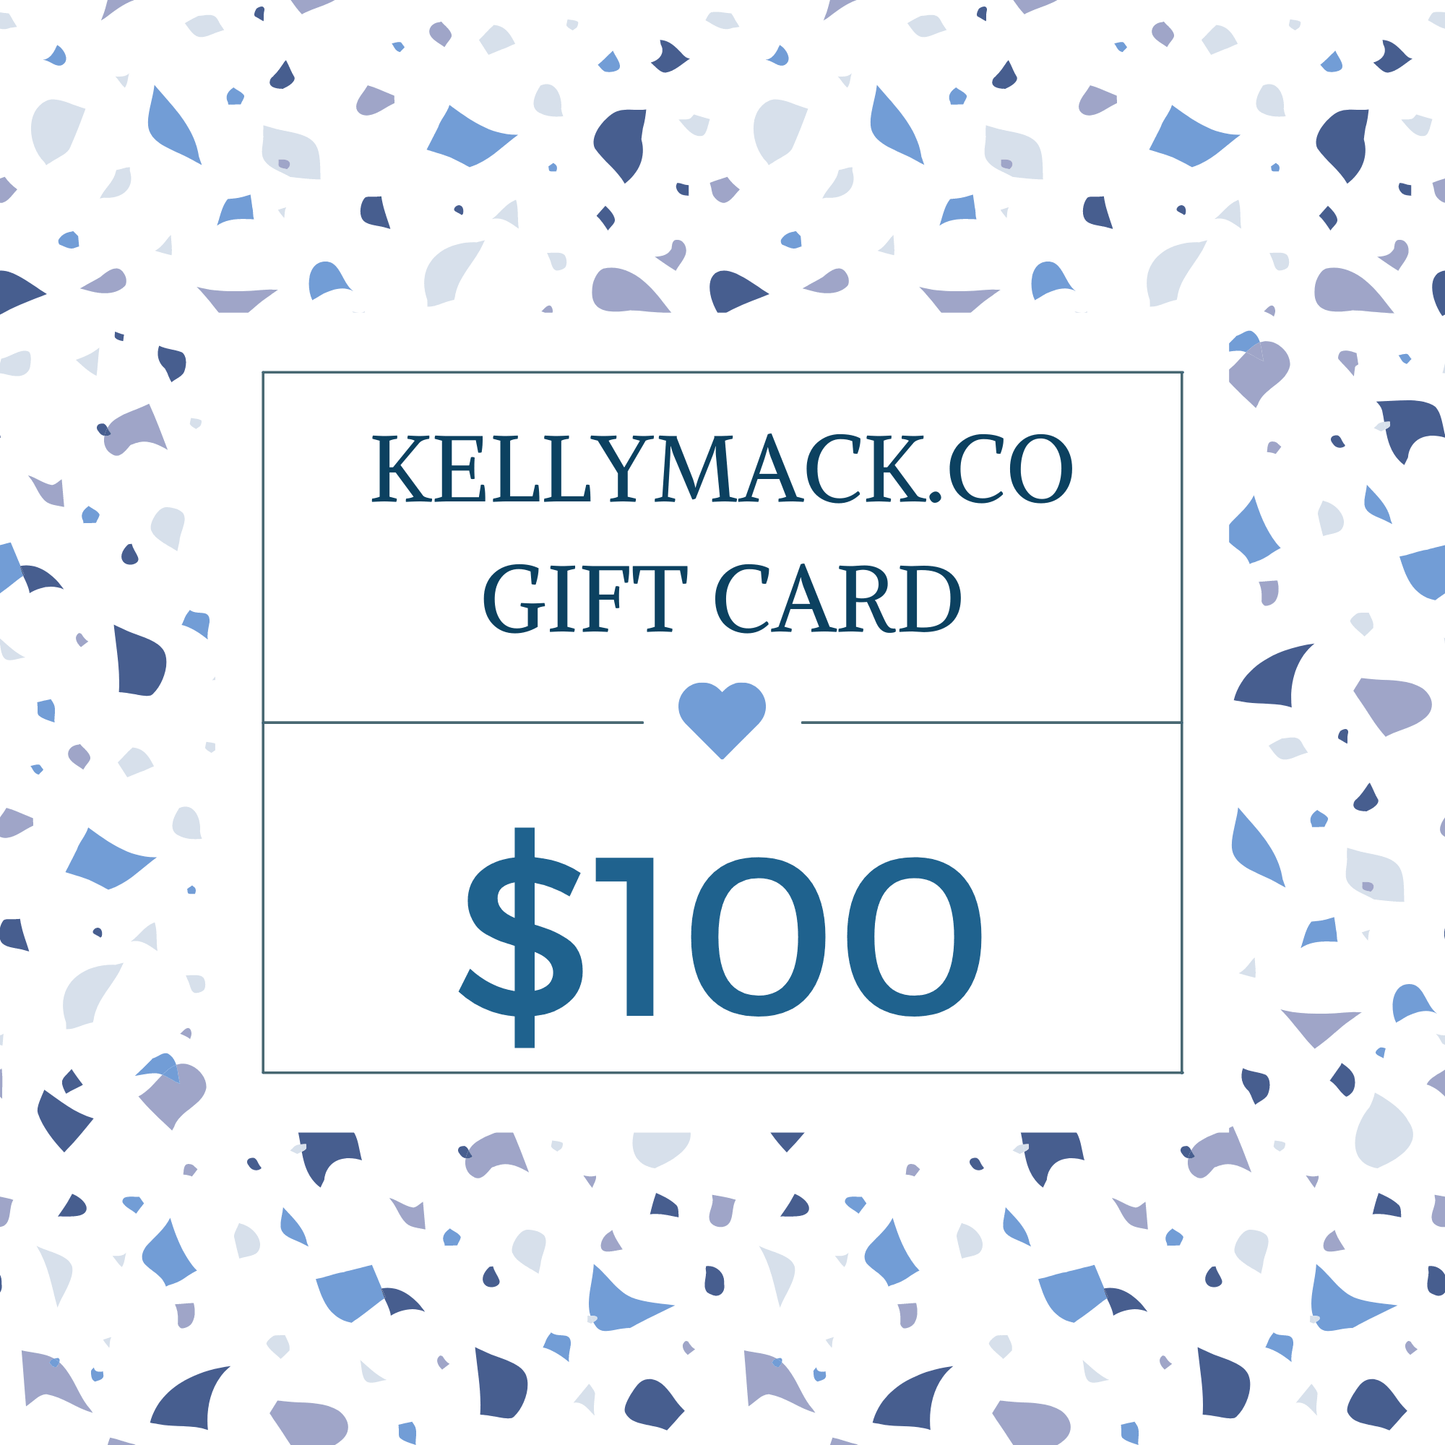 KellyMack.Co gift card $100.00 KellyMack.Co Gift Card